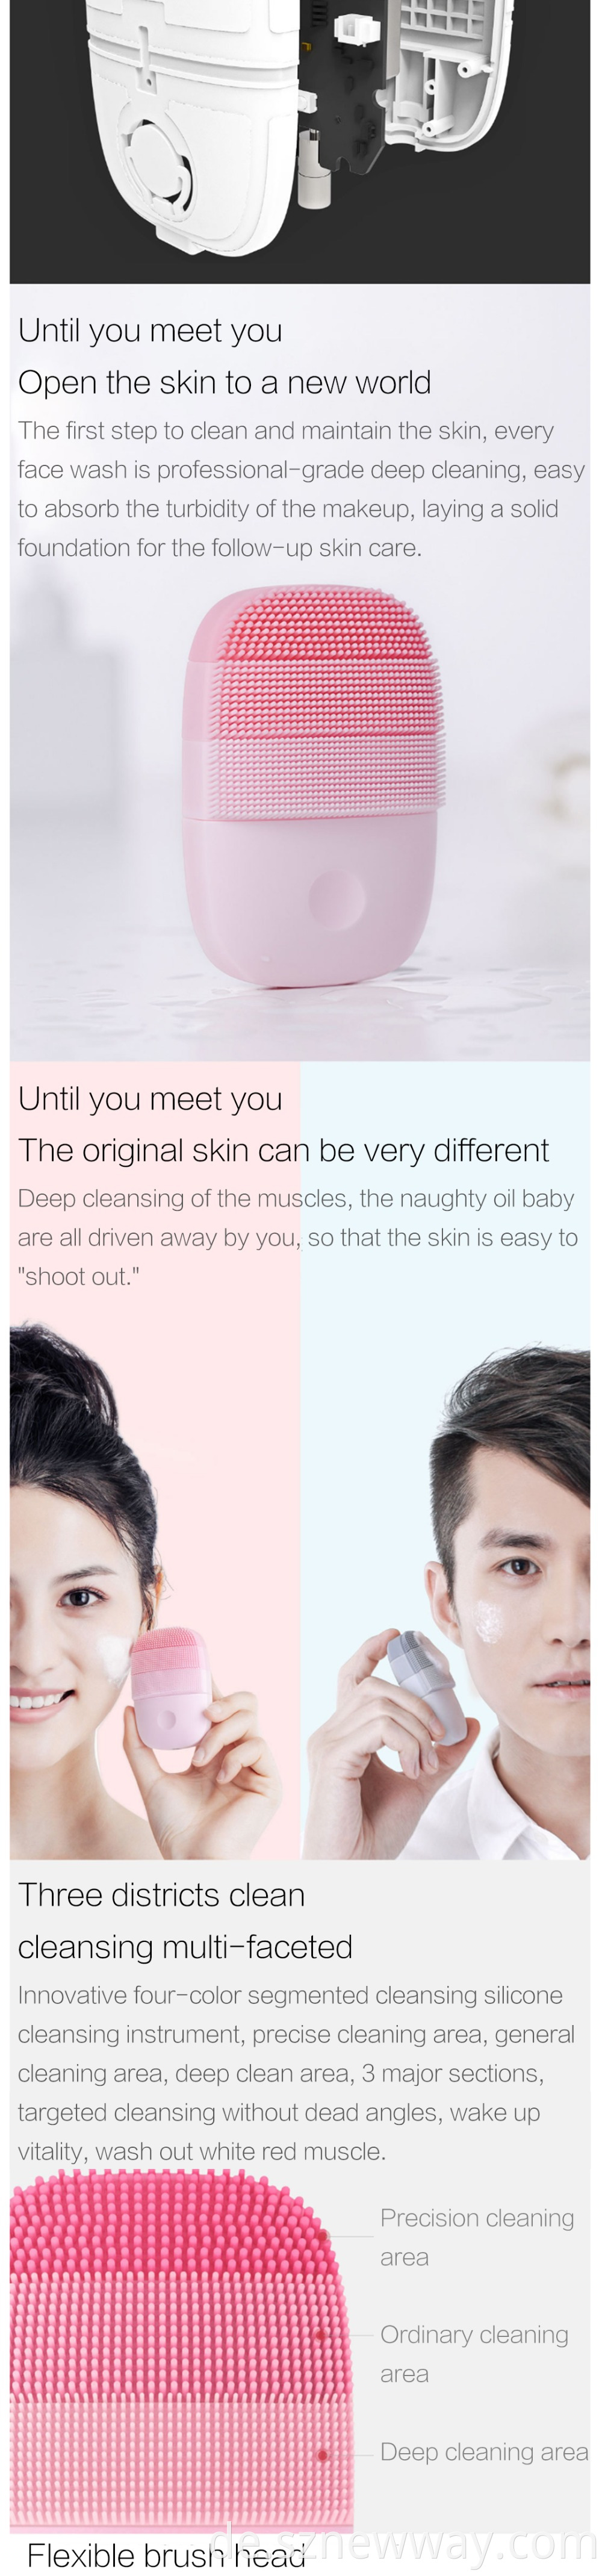 Xiaomi Inface Facial Brush